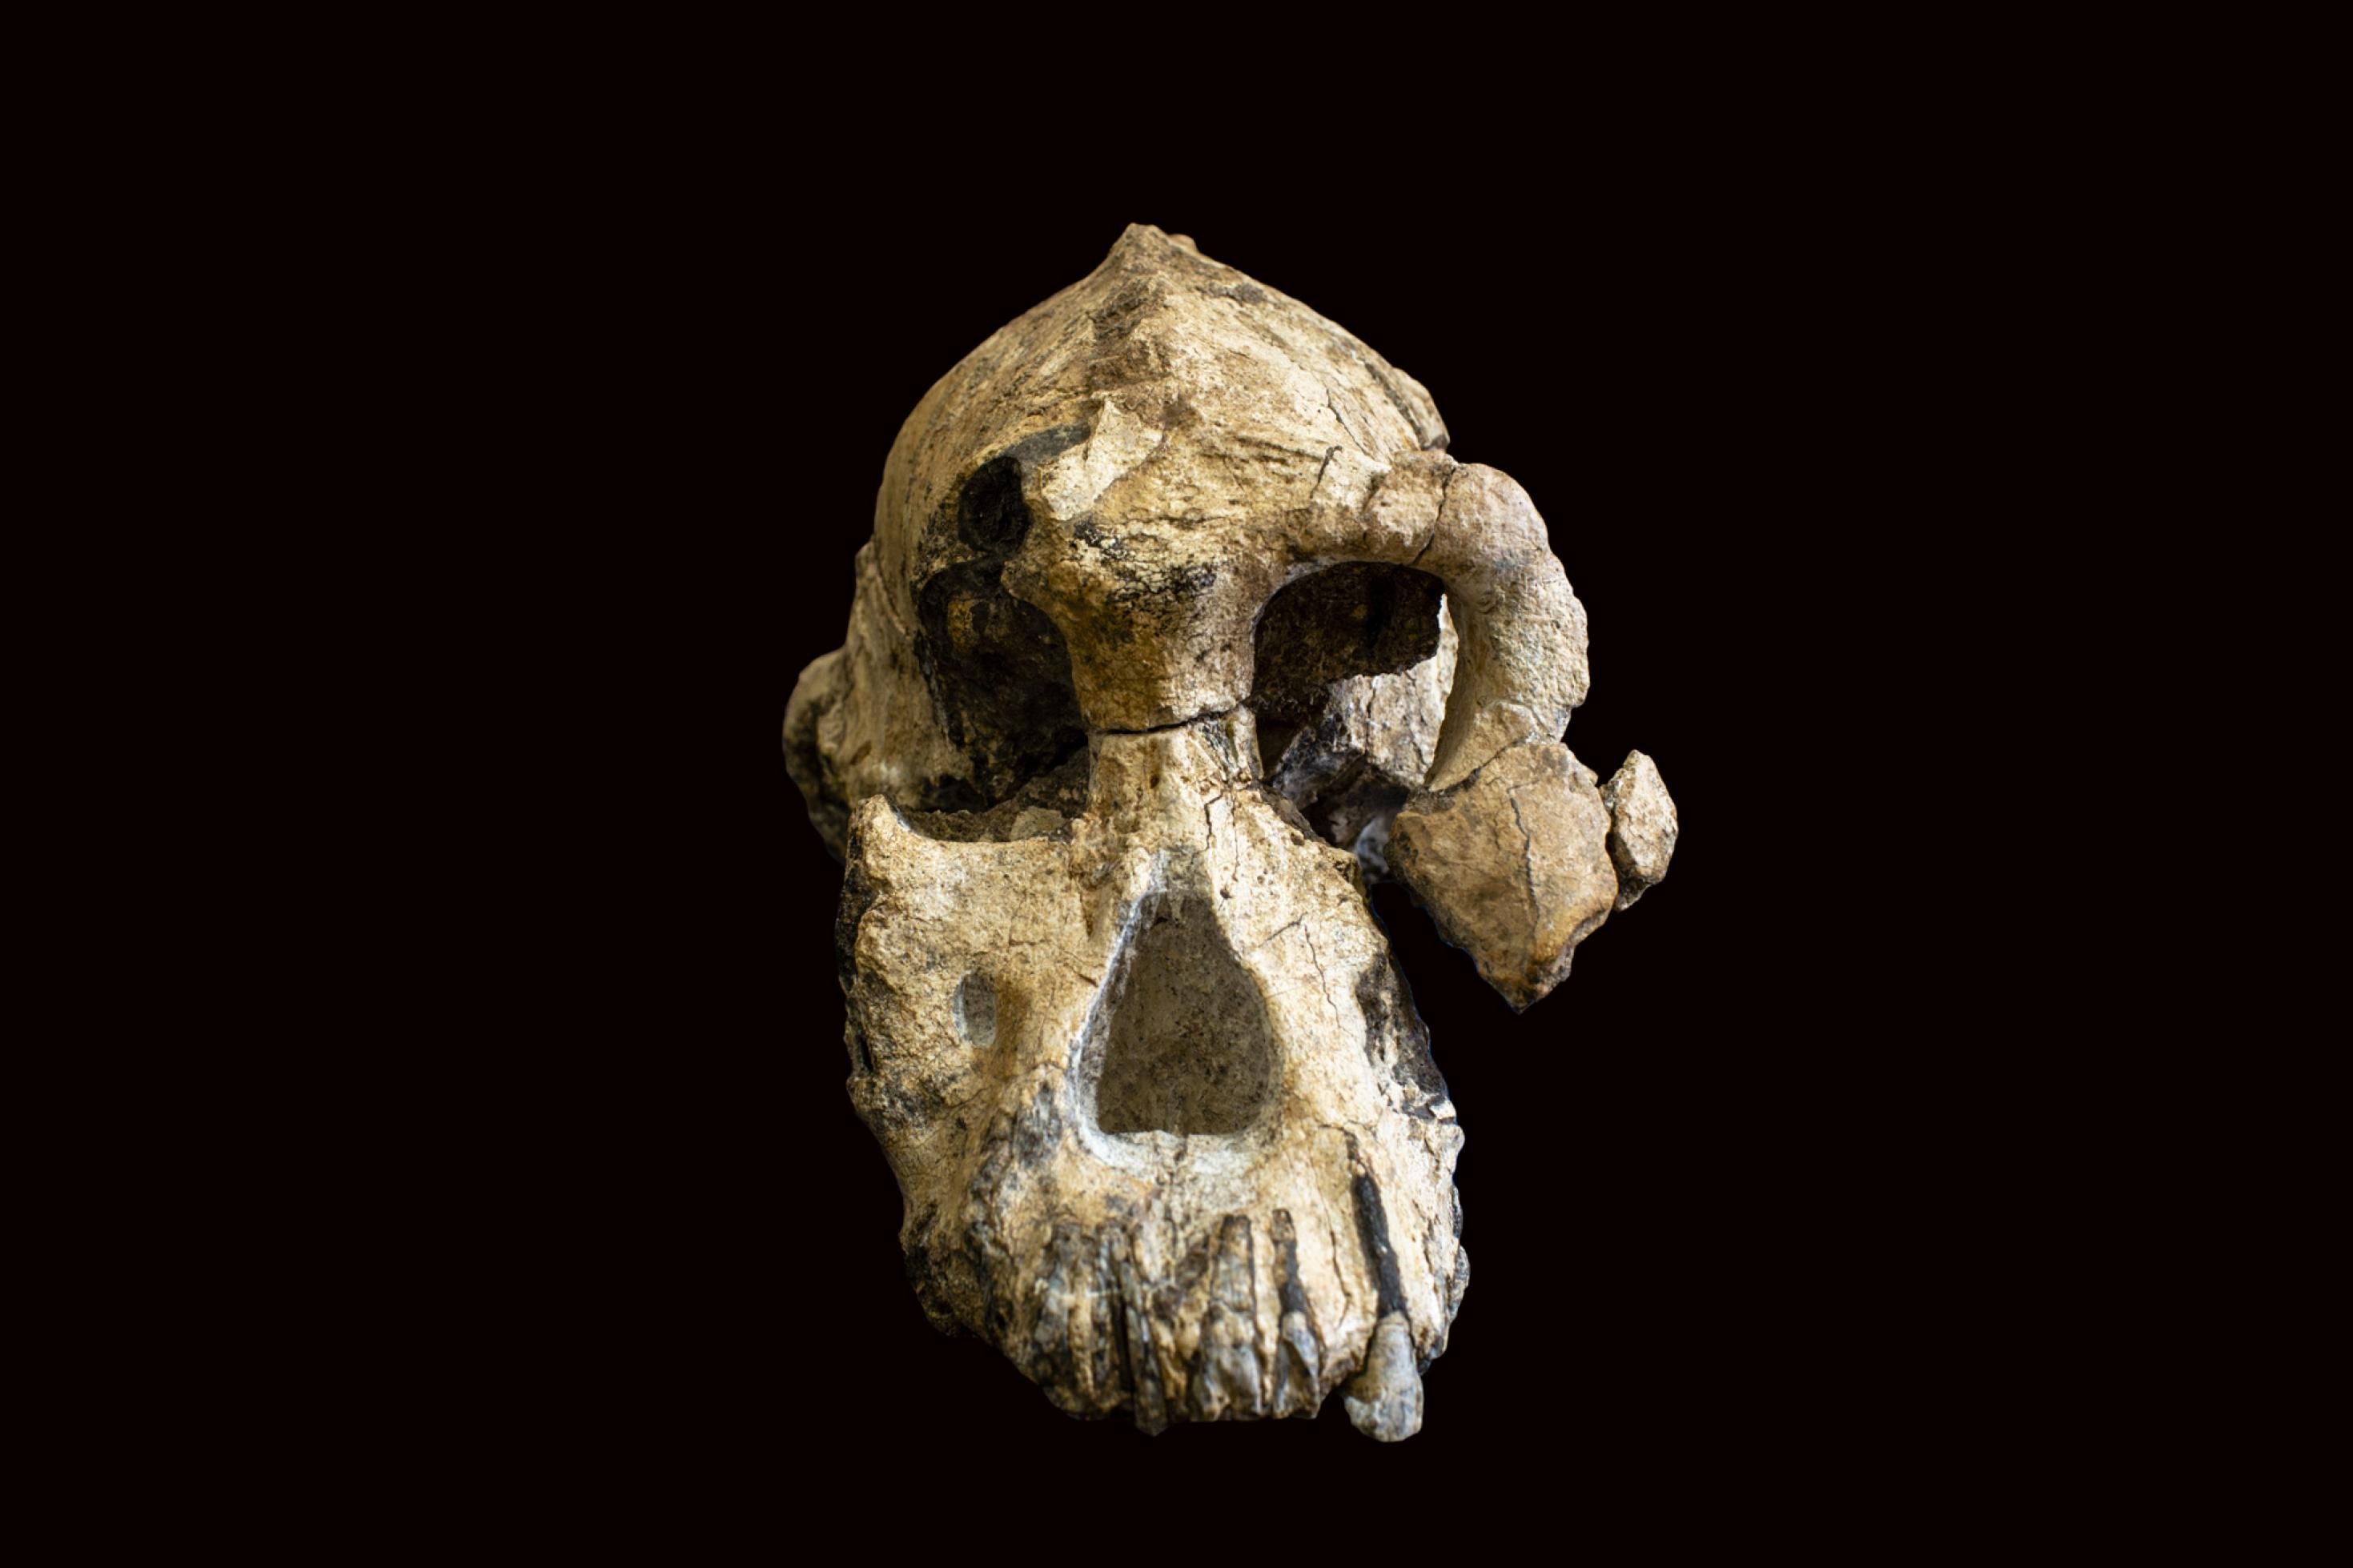 Abgebildet ist die Frontalansicht des 3,8 Millionen Jahre alten Schädels von Australopithecus anamensis. Der Schädel offenbart ein Wesen mit kräftig gebauten Augenhöhlen und ausladenden Wangenknochen. Einen derart vollständigen Schädel eines Vormenschen haben die Forscher bislang selten gefunden